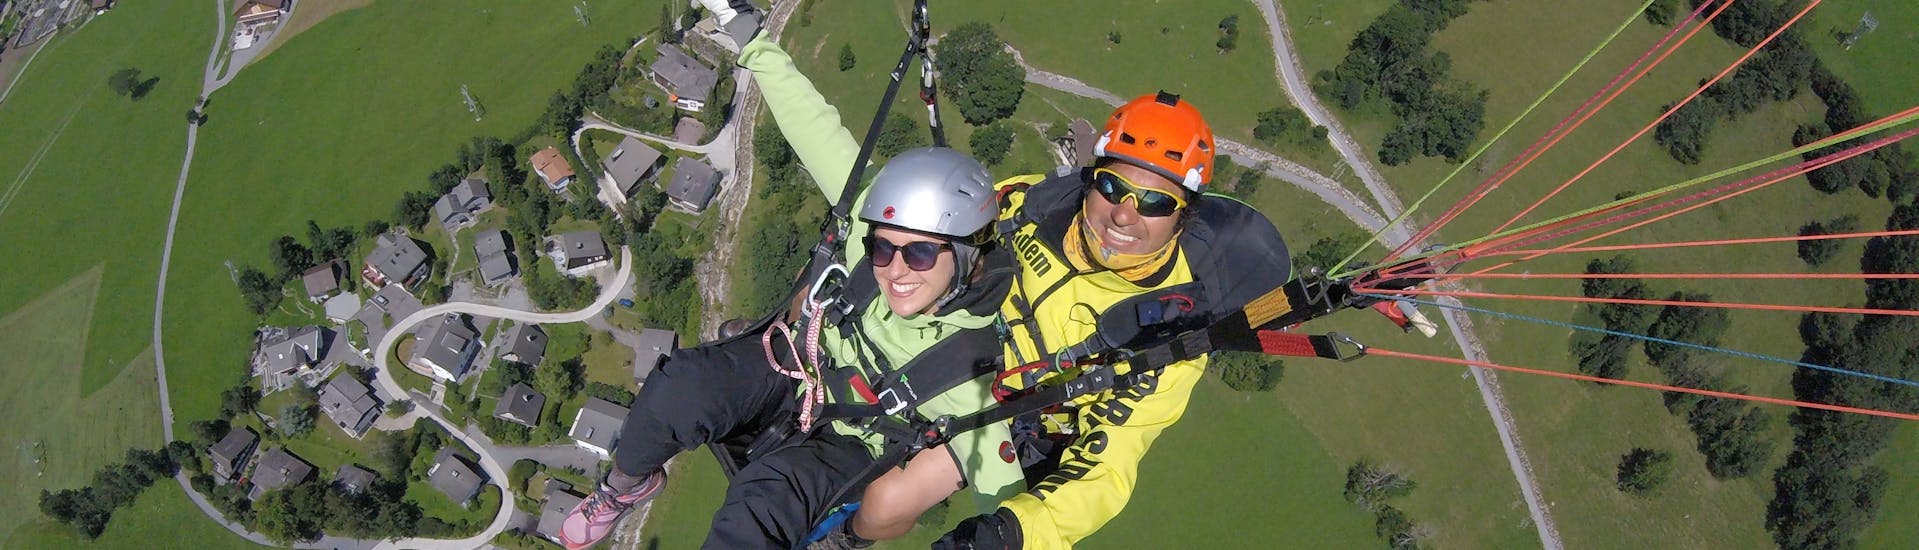 Paragliding Flybypara fliegt mit einer Kundin durch die Luft beim Tandem Paragliding vom Brunni in Engelberg - Experiment.